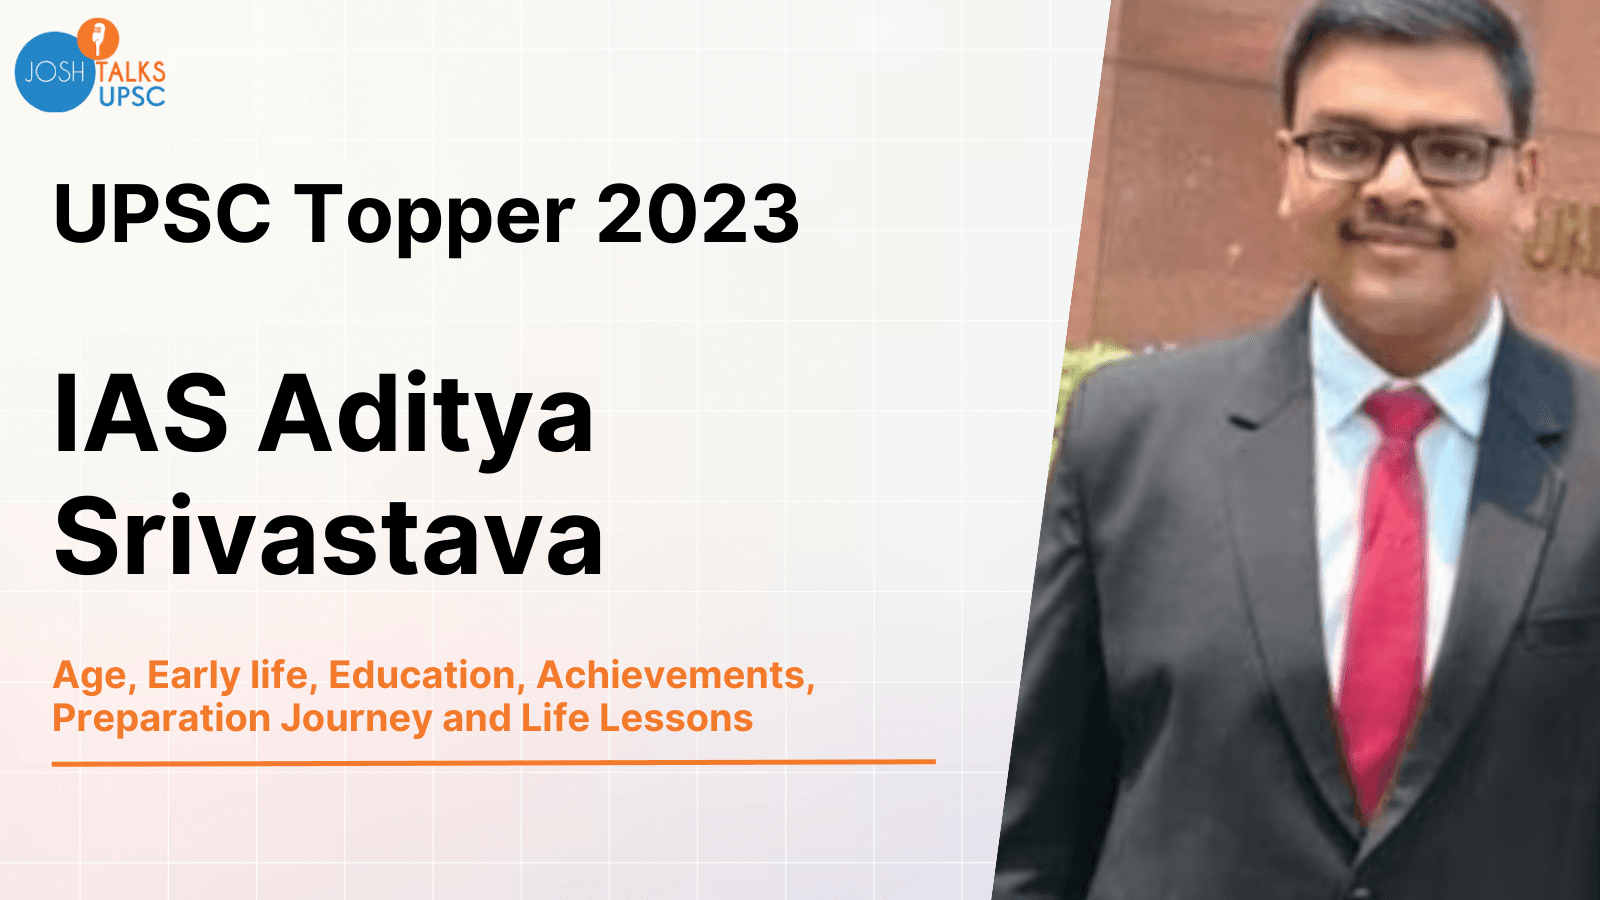 UPSC Topper 2023 | Aditya Srivastava